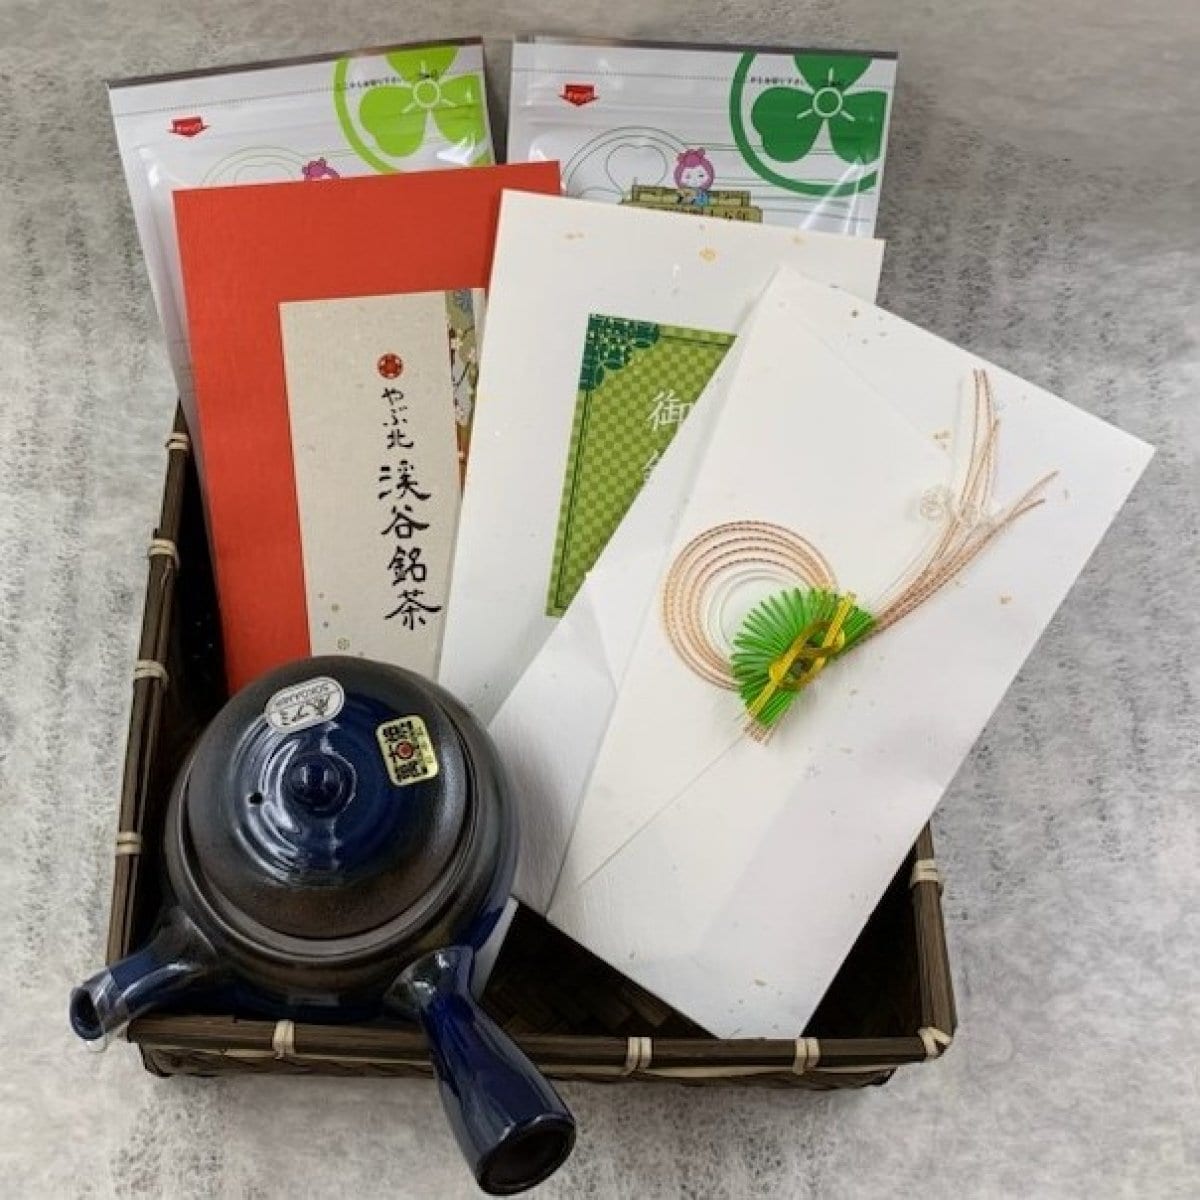 祝「田畑茶舗スペシャルセット」極上煎茶、普段使い煎茶、急須まで付いたスペシャルセットです。